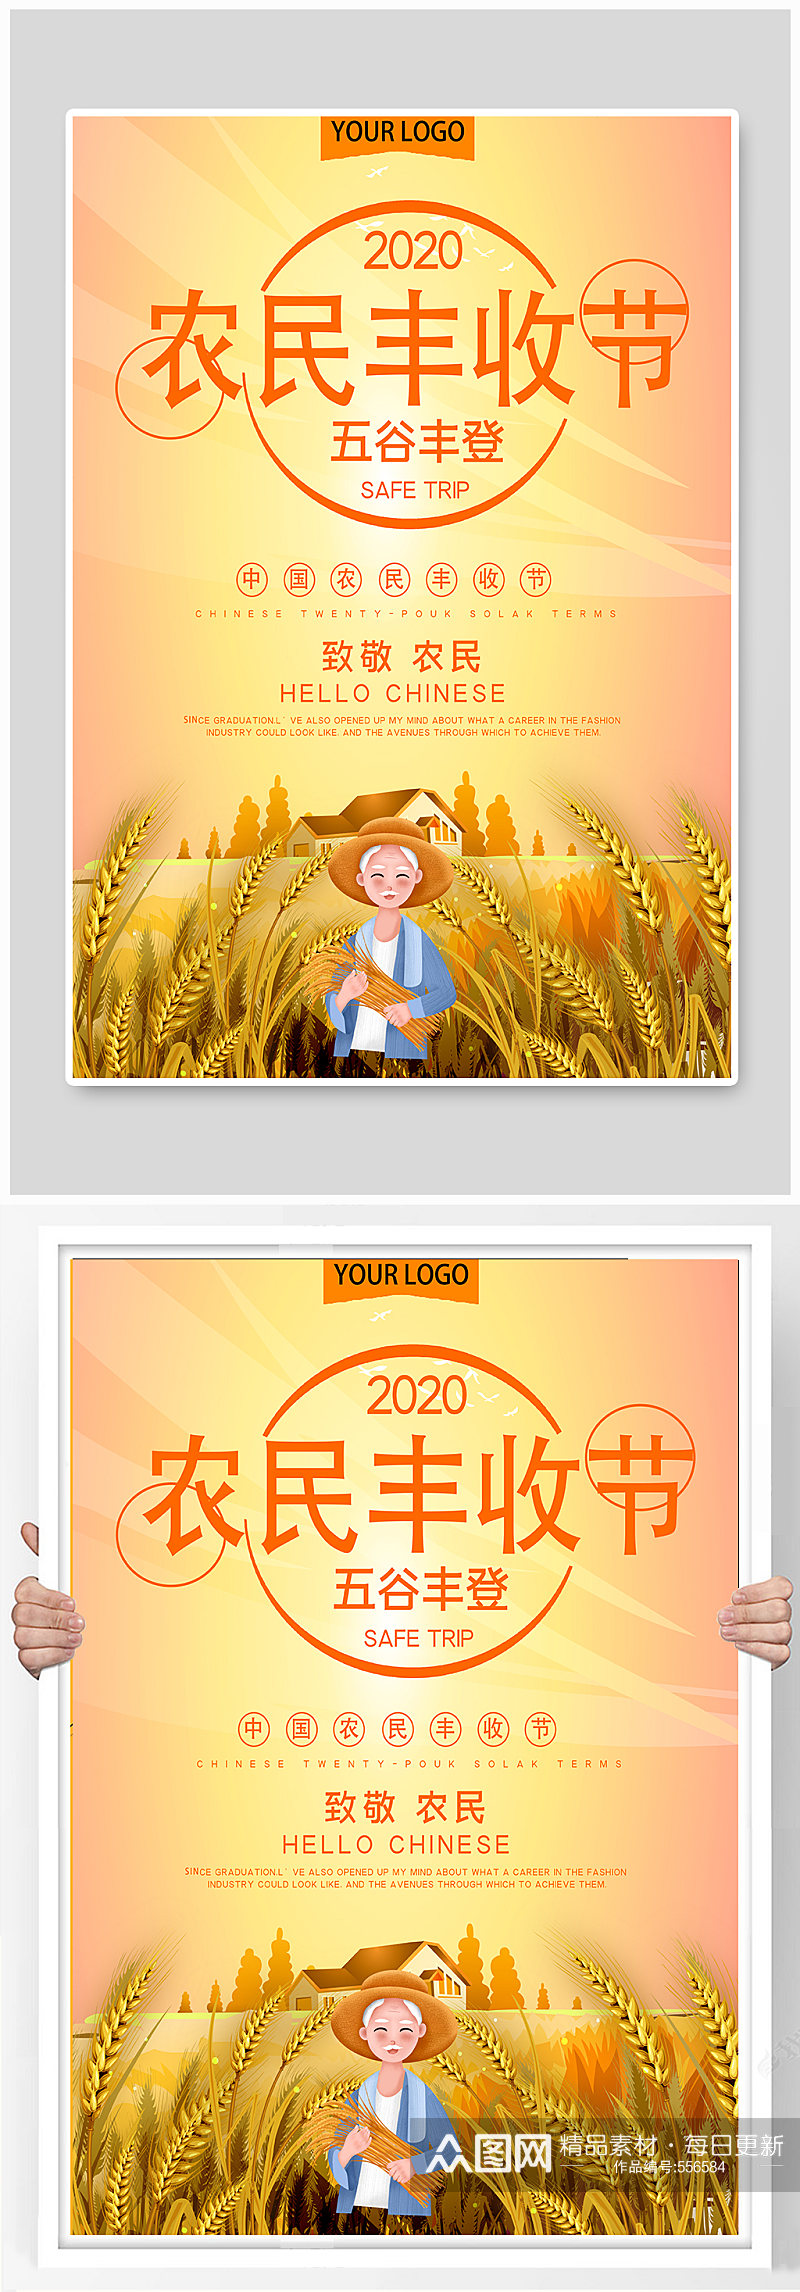 中国农民丰收节公益宣传海报素材